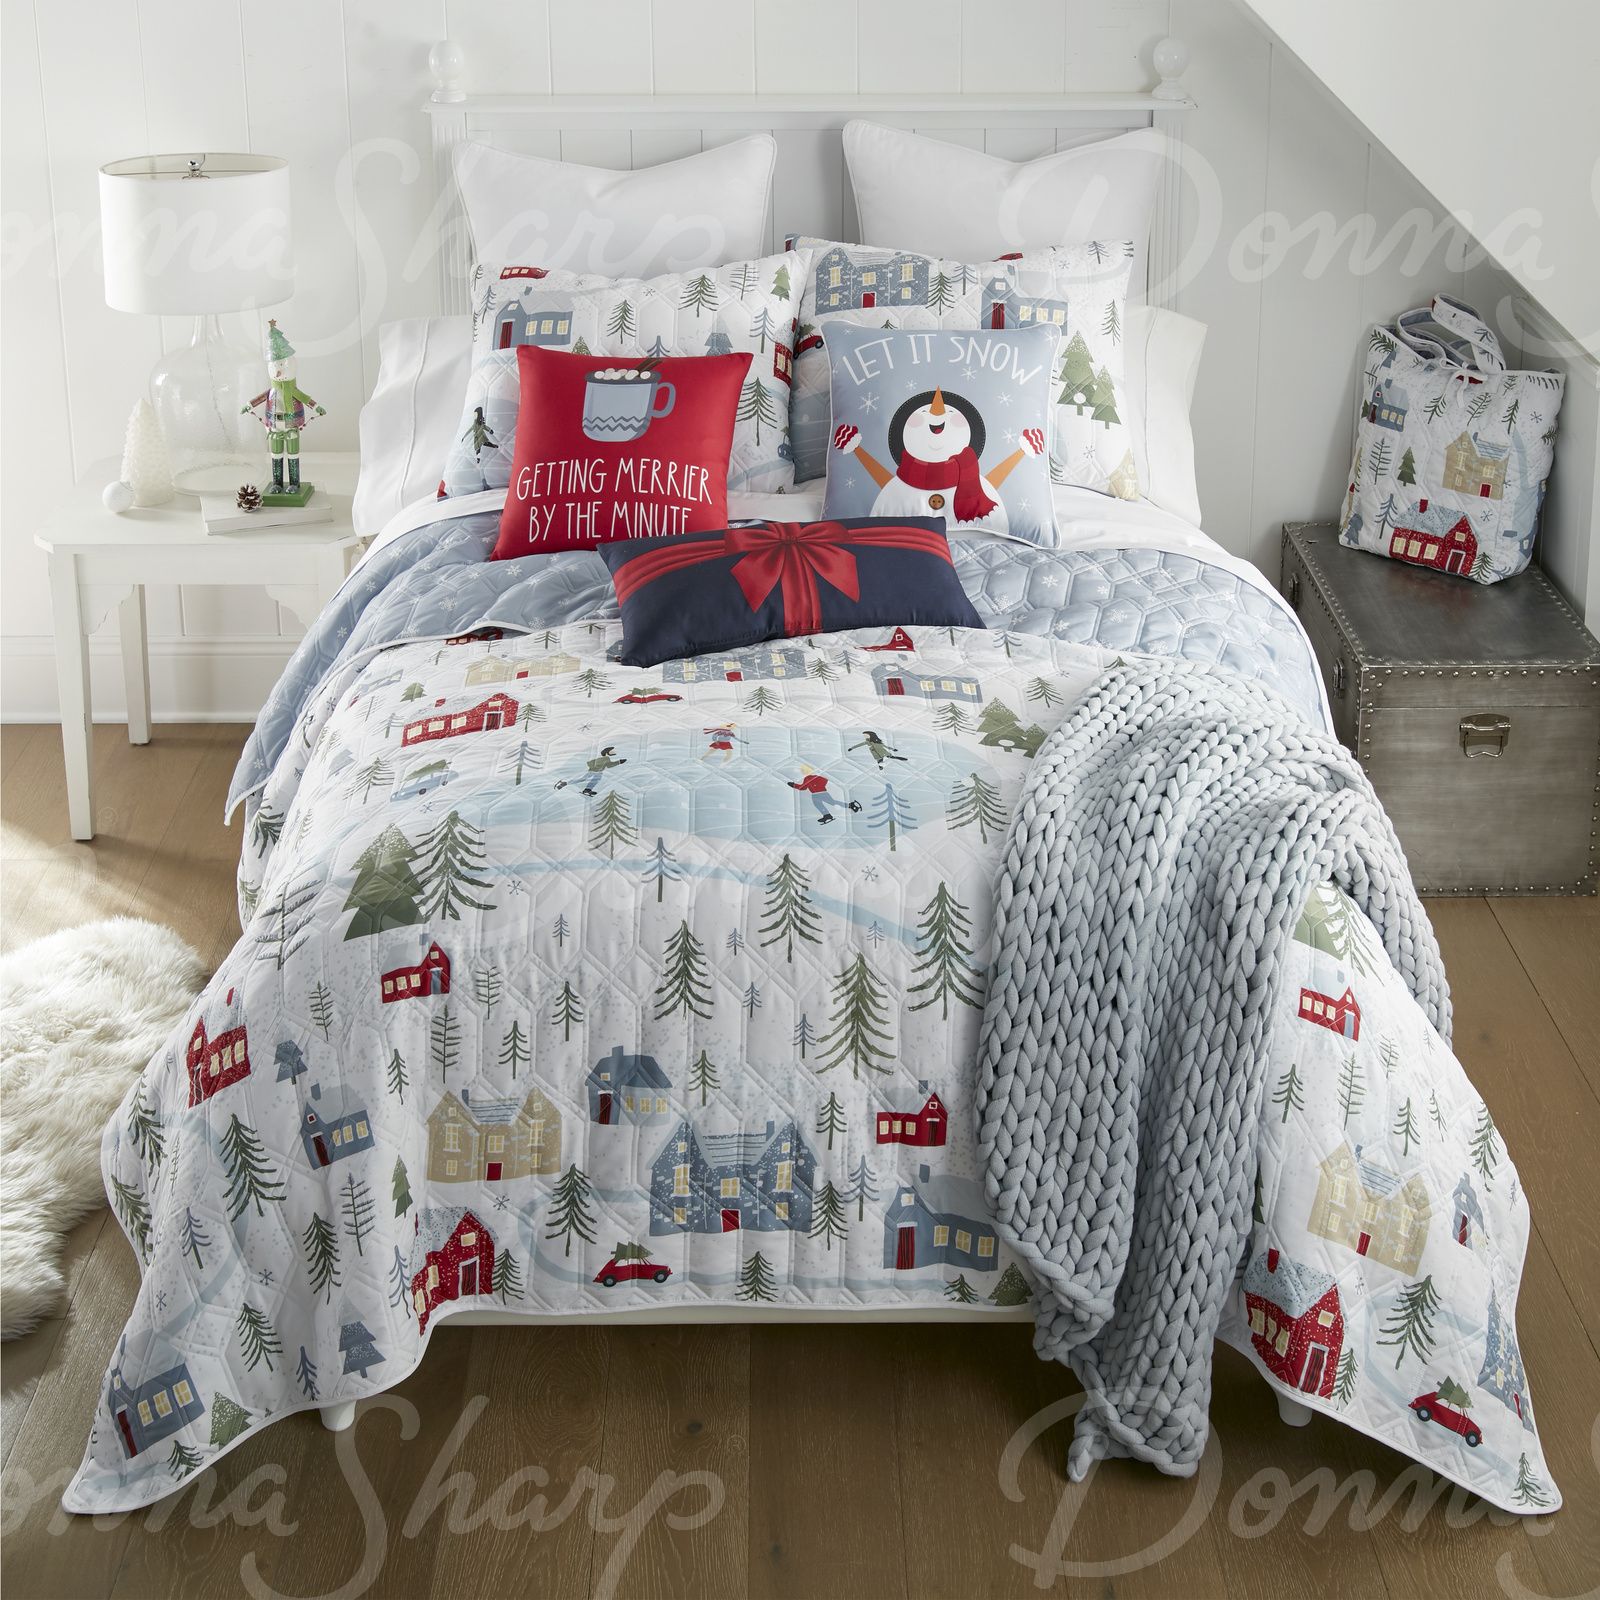 Winter Wonderland Bedding by Donna Sharp